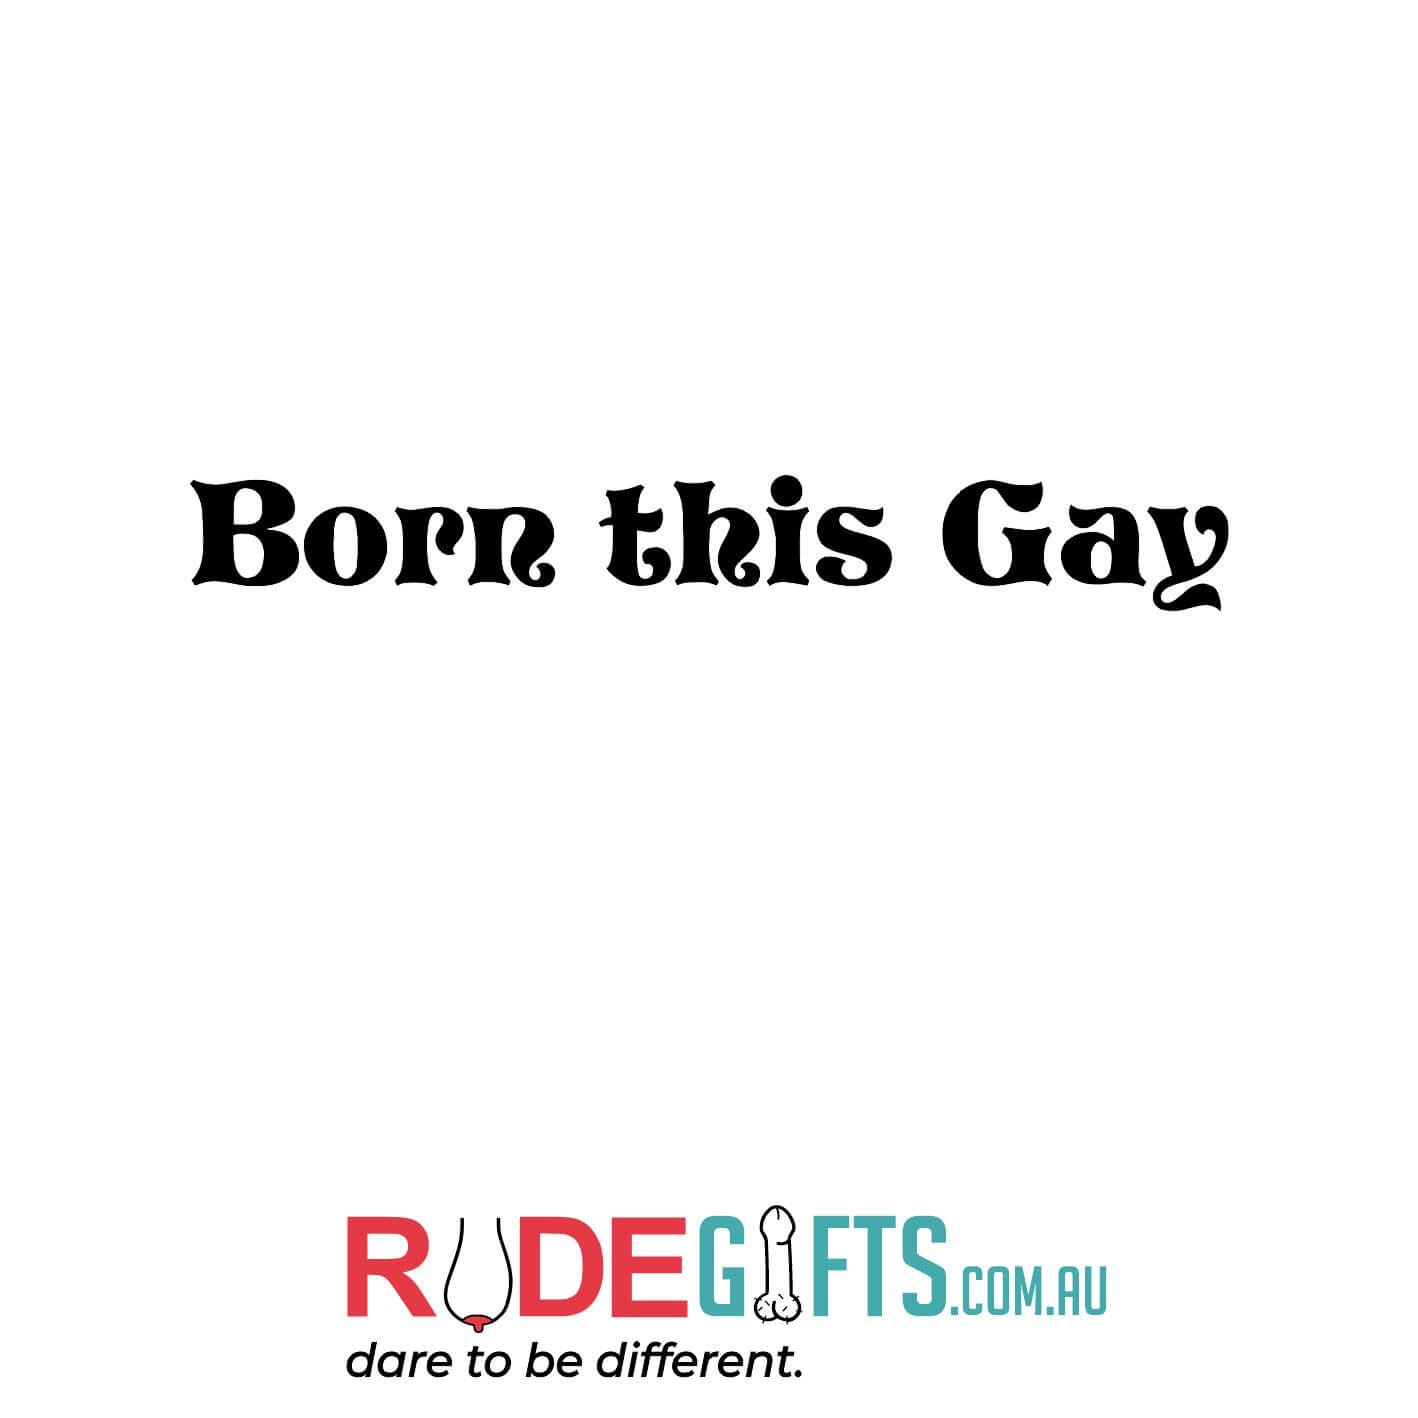 Born this gay - 0